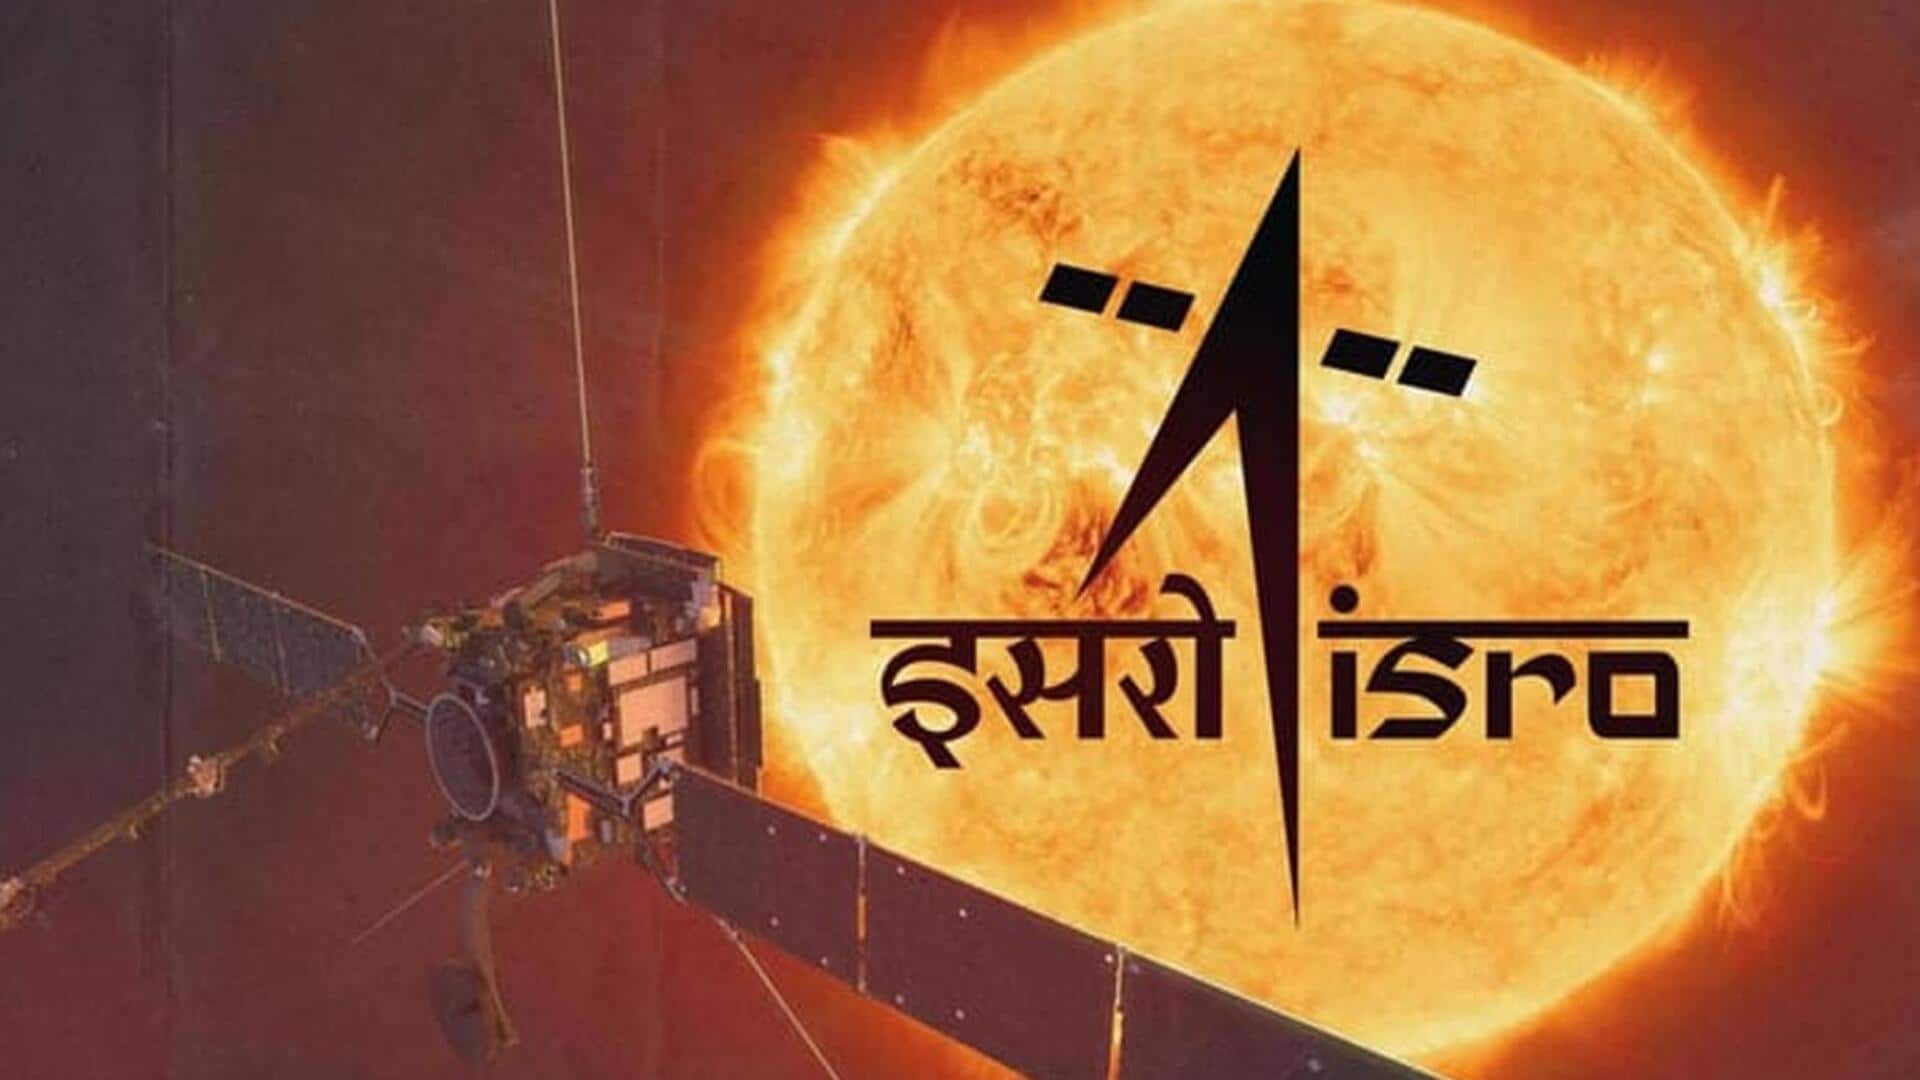 आदित्य-L1 मिशन को लेकर ISRO ने दिया अपडेट, कहा- स्वस्थ है अंतरिक्ष यान